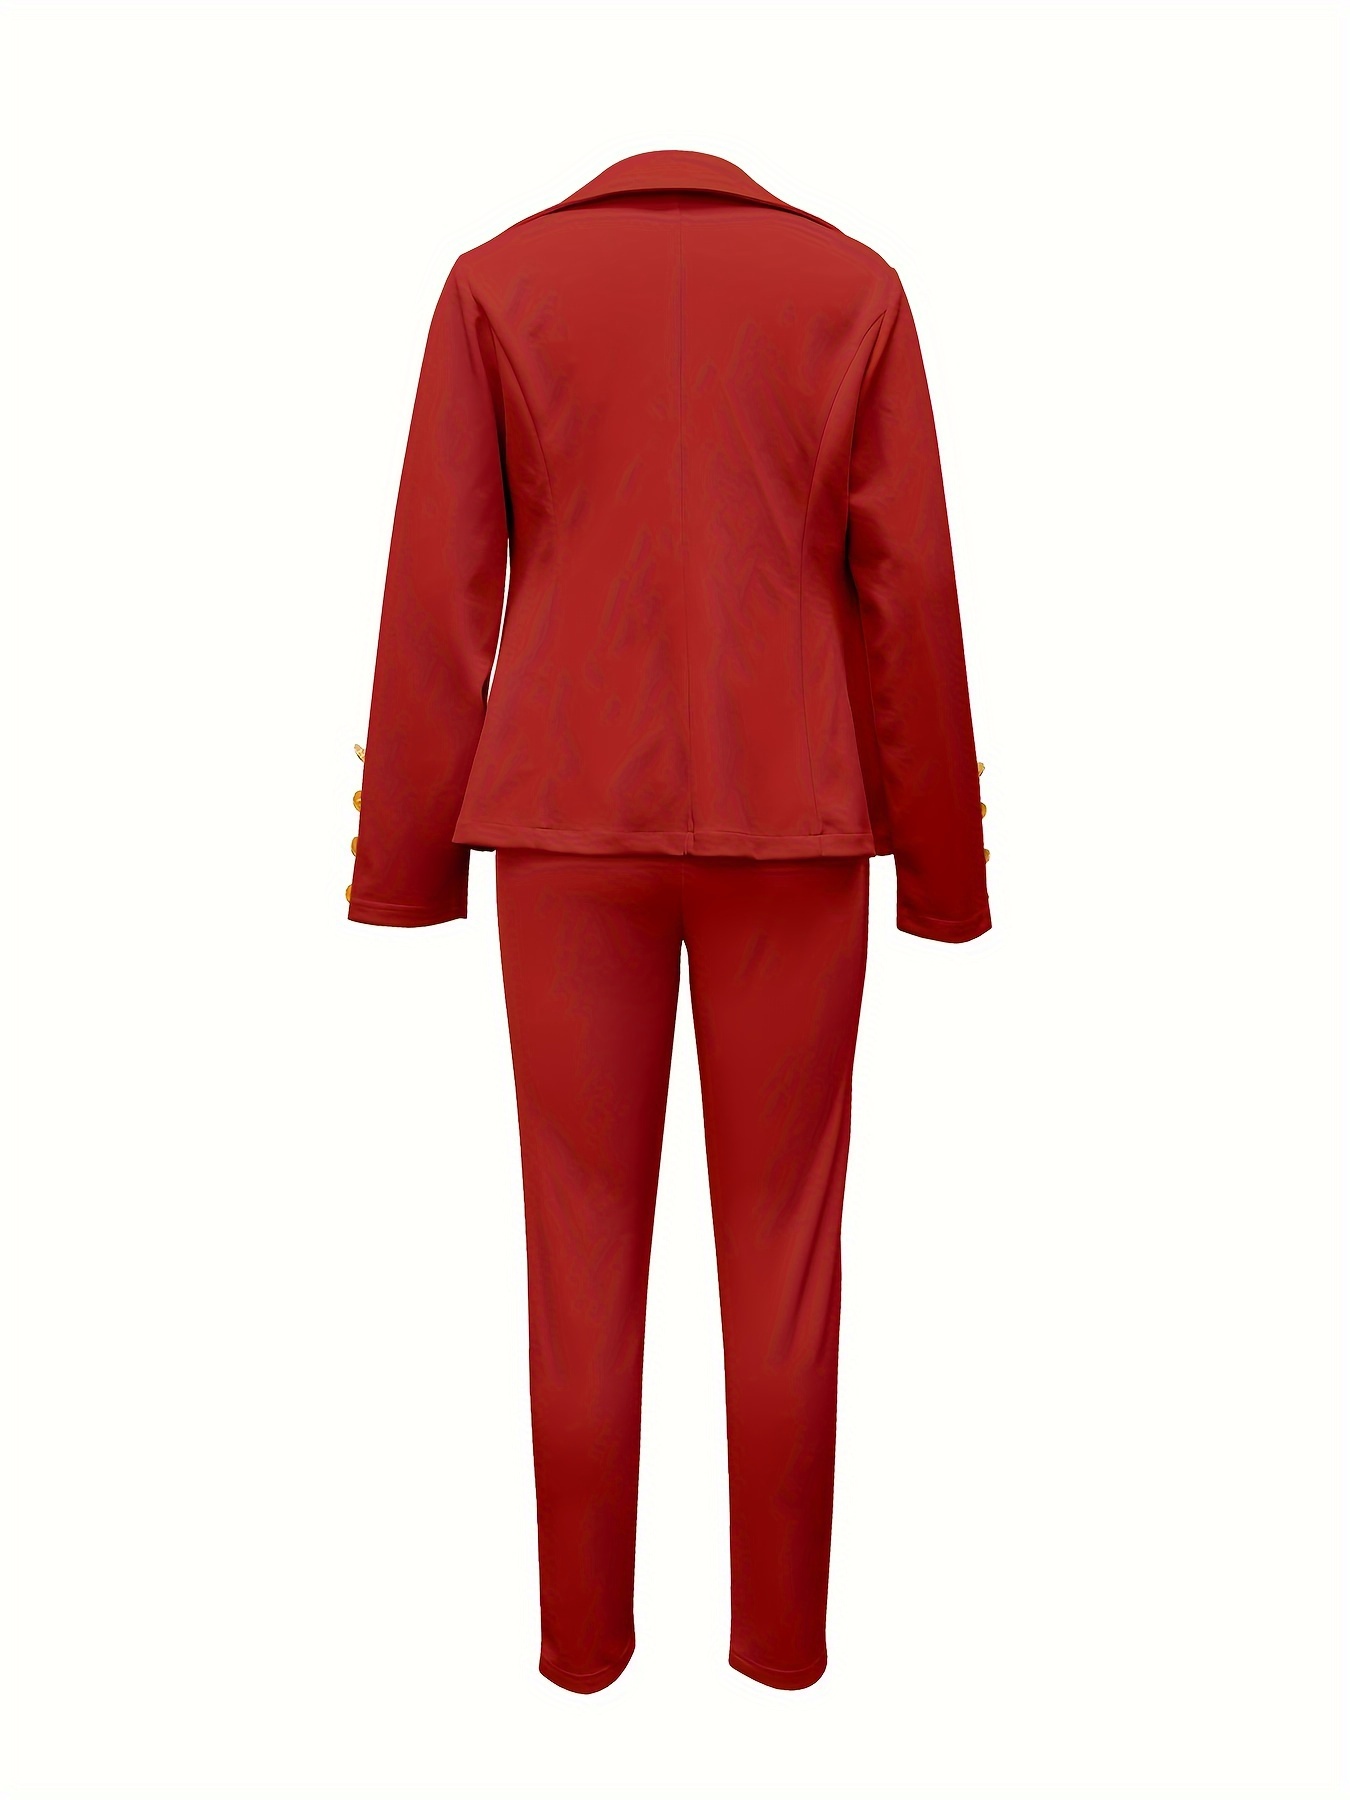 Business Women's 2-Piece Set Fashion Slim Solid Color Long Suit Jacket +  Slim Pants Suit Ladies Casual Office Wear (Color : Blue, Size : Medium) :  : Clothing, Shoes & Accessories